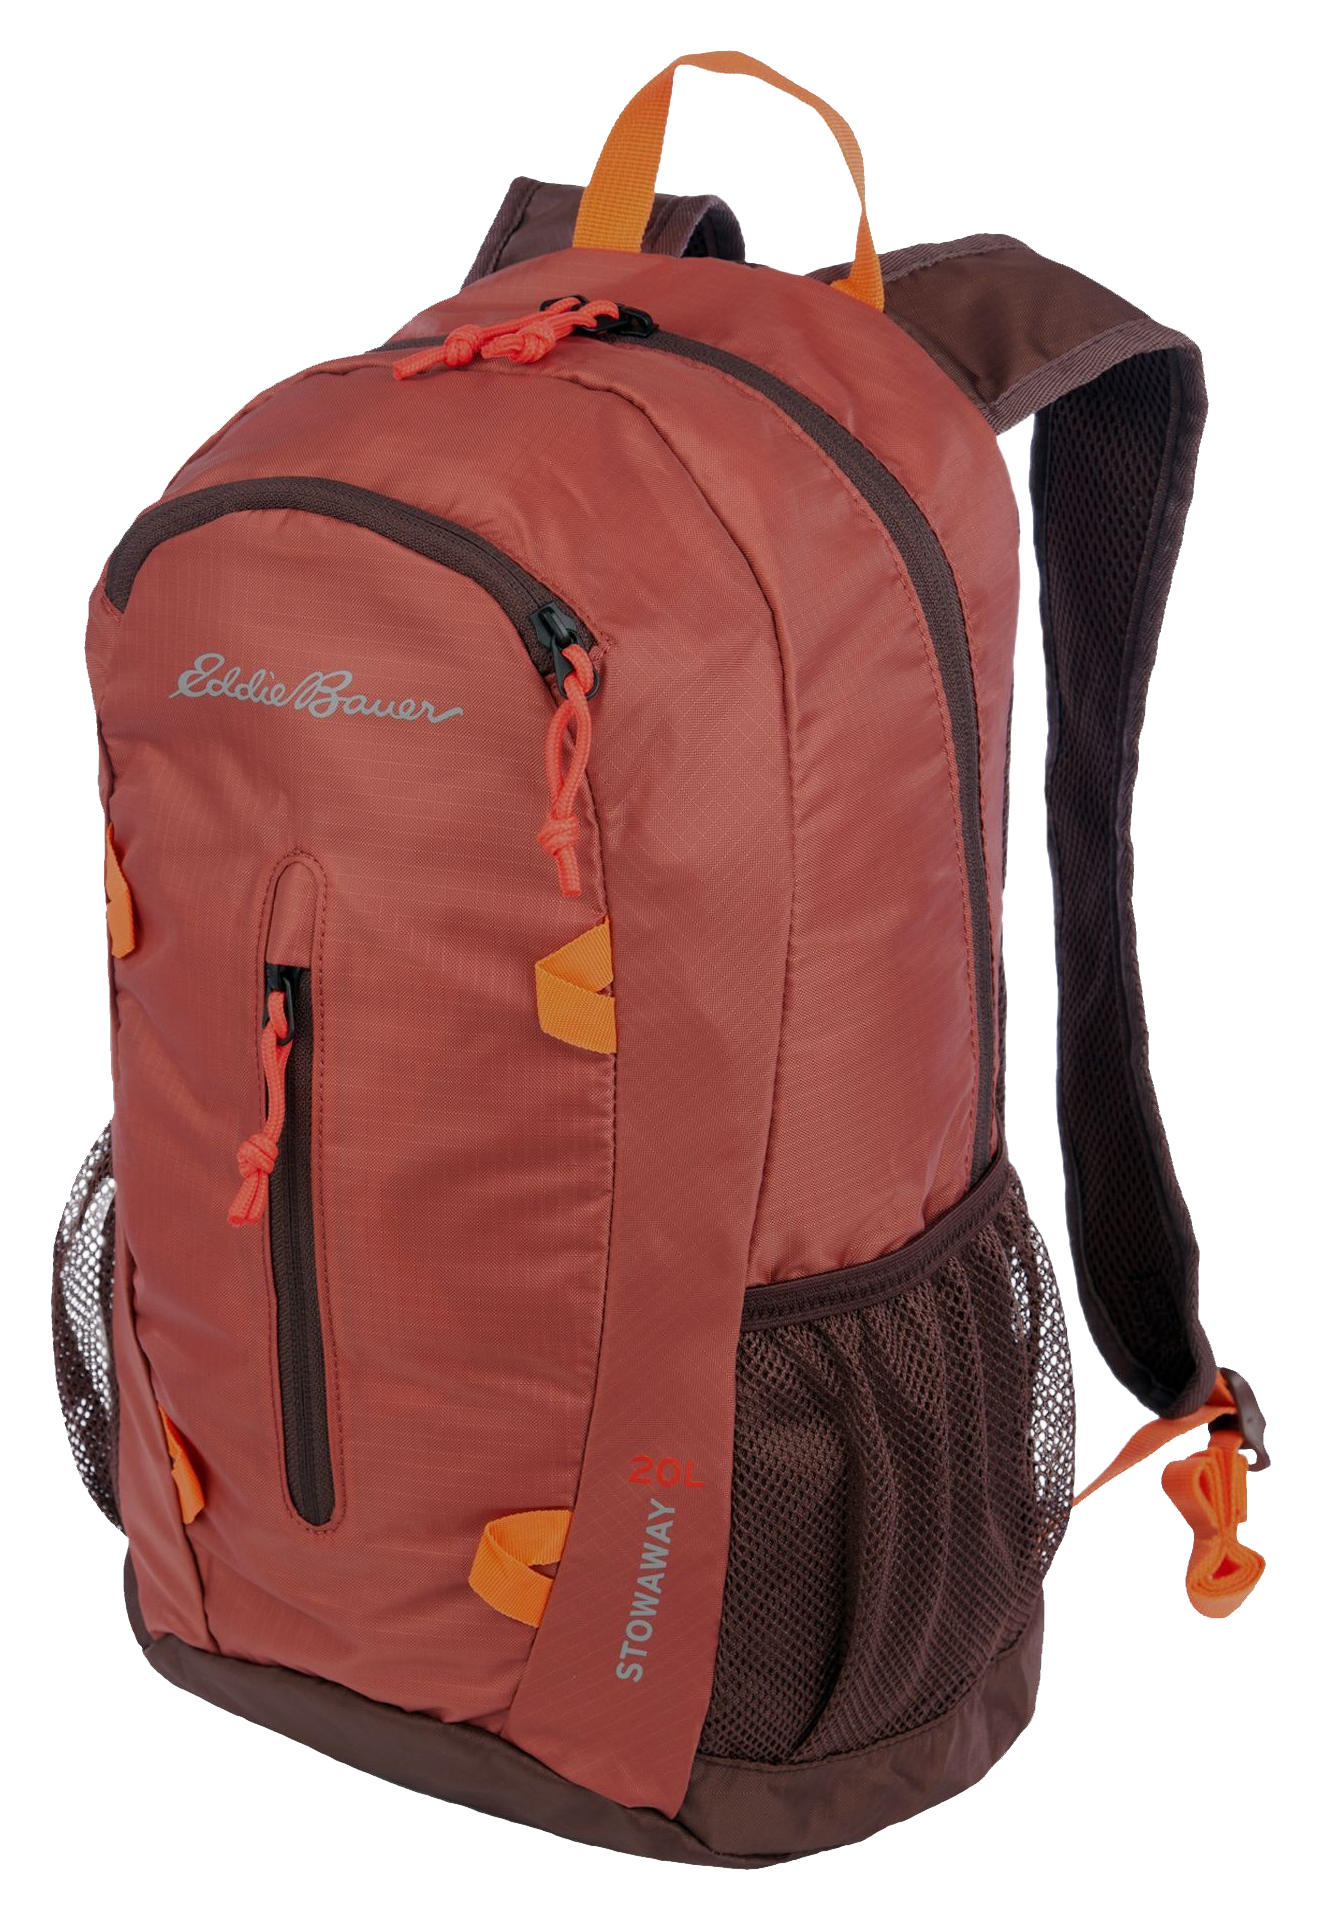 Eddie Bauer Stowaway Packable 20L Backpack - Maroon